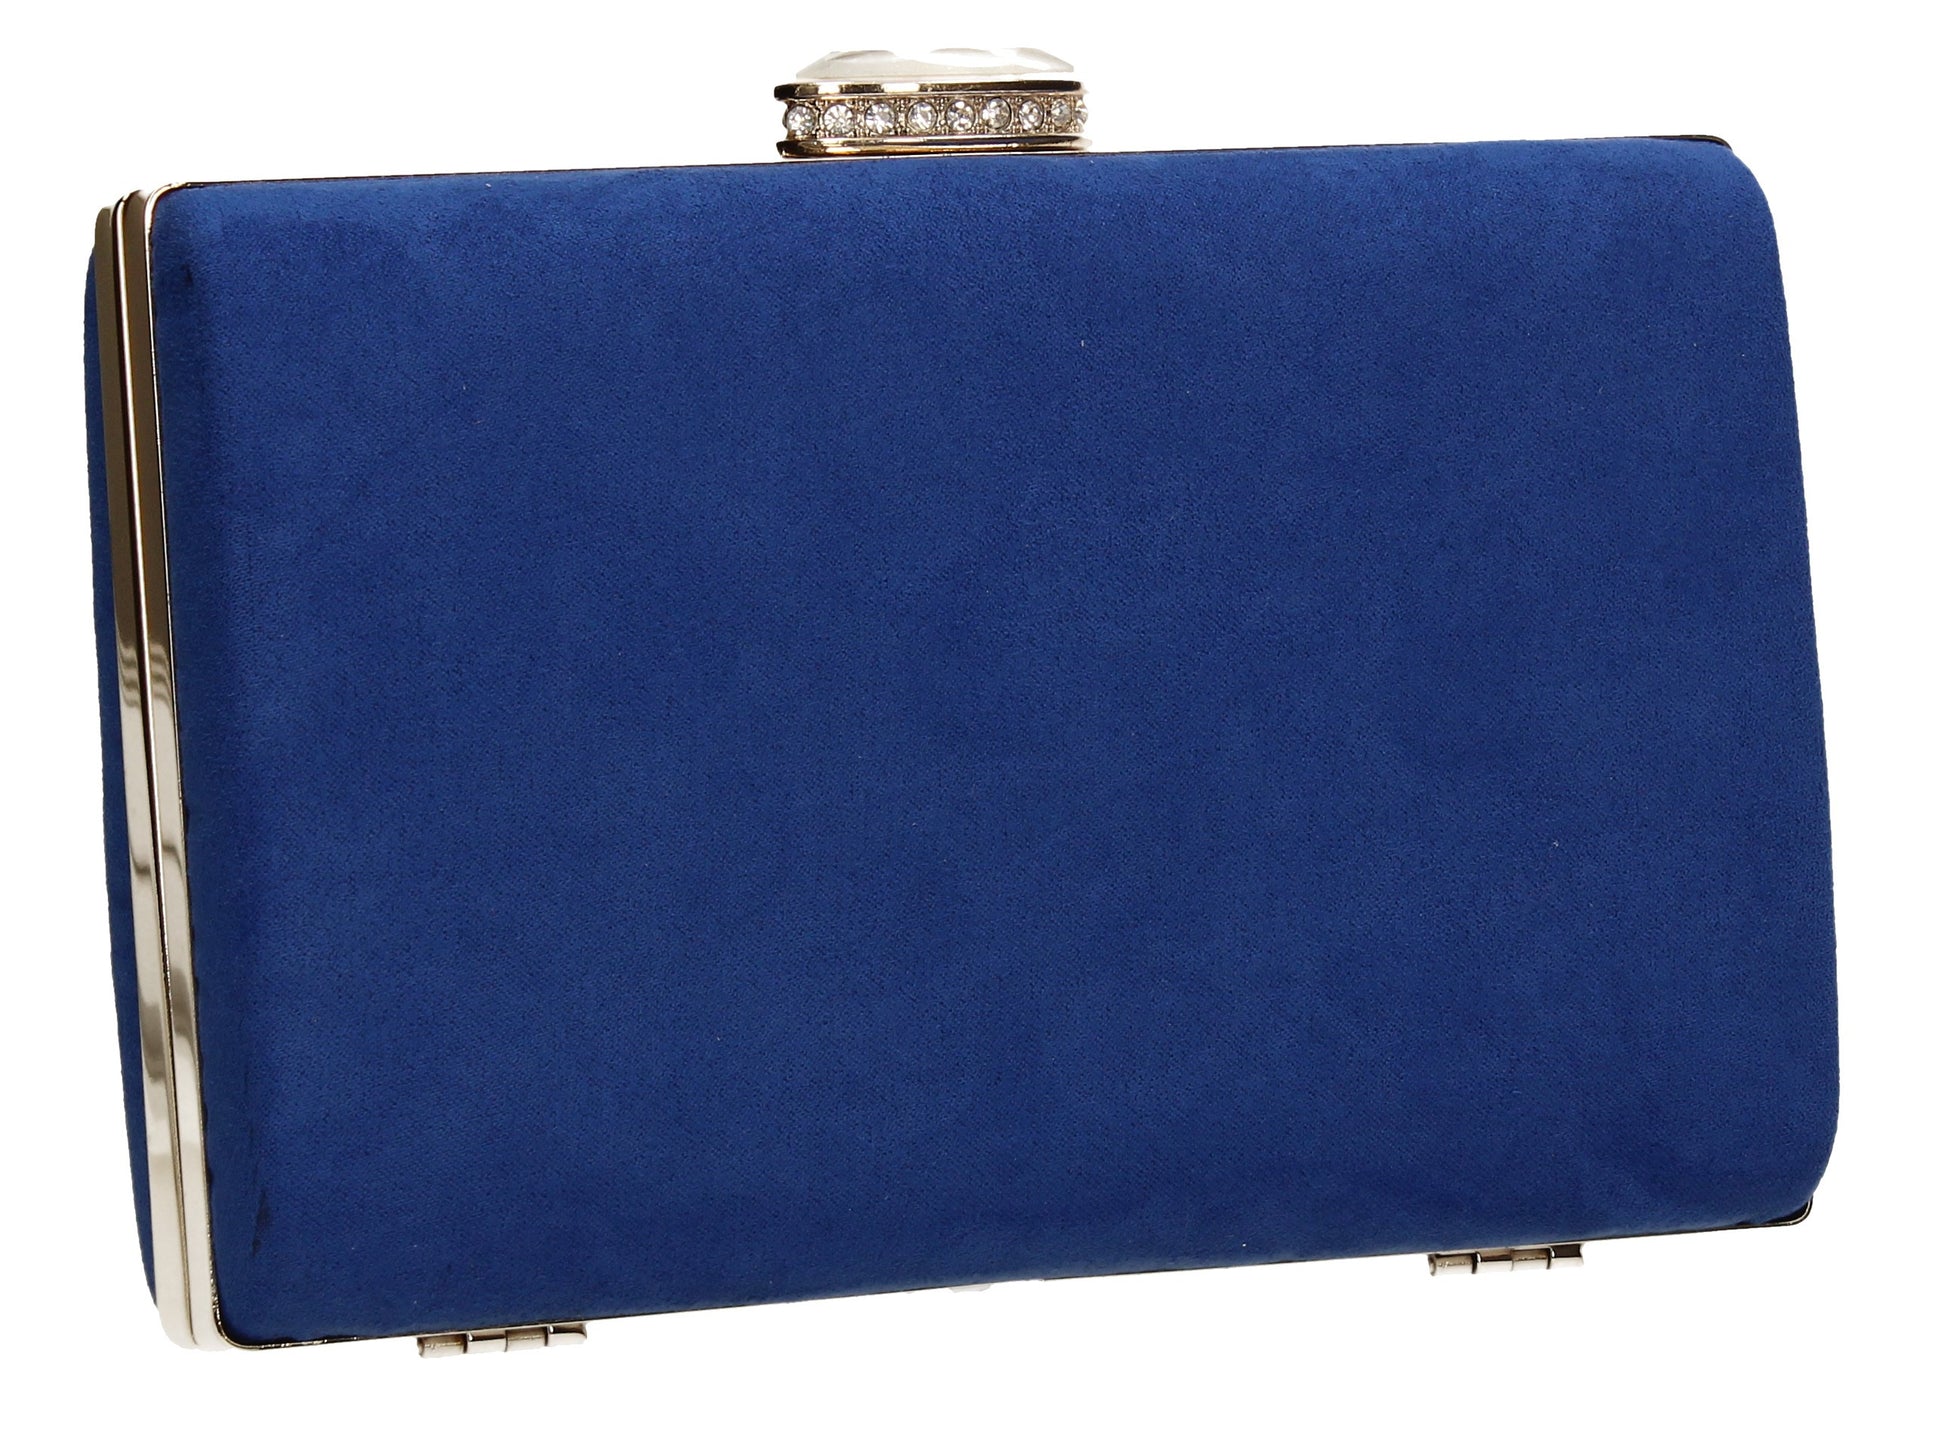 SWANKYSWANS Surrey Clutch Bag Royal Blue Cute Cheap Clutch Bag For Weddings School and Work